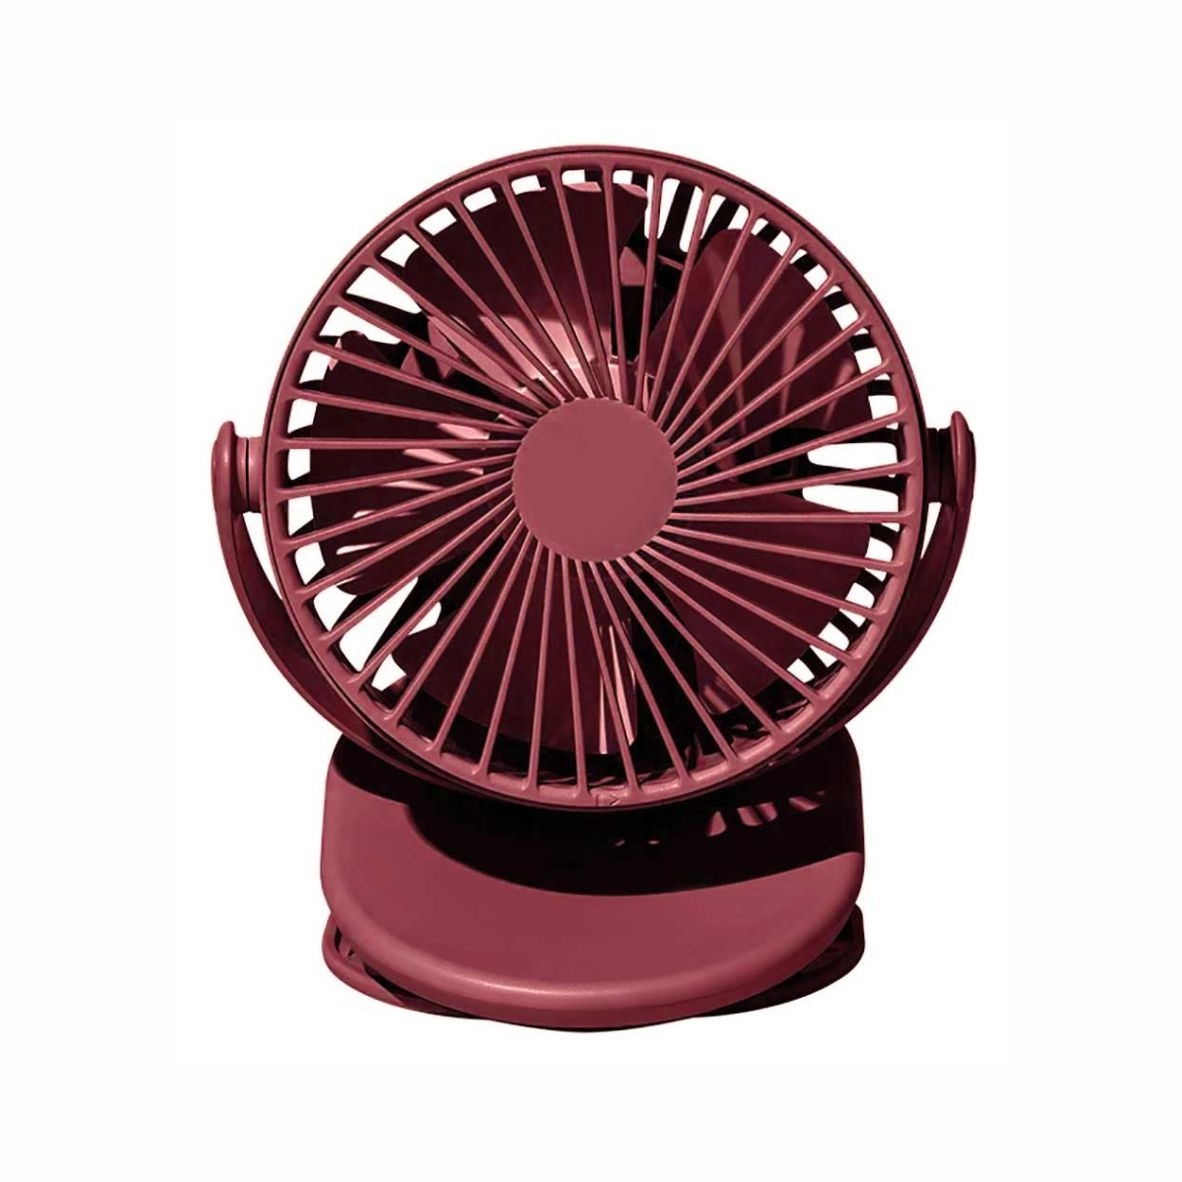 Портативный вентилятор на клипсе Solove F3, бордовый, бордовый, пластик